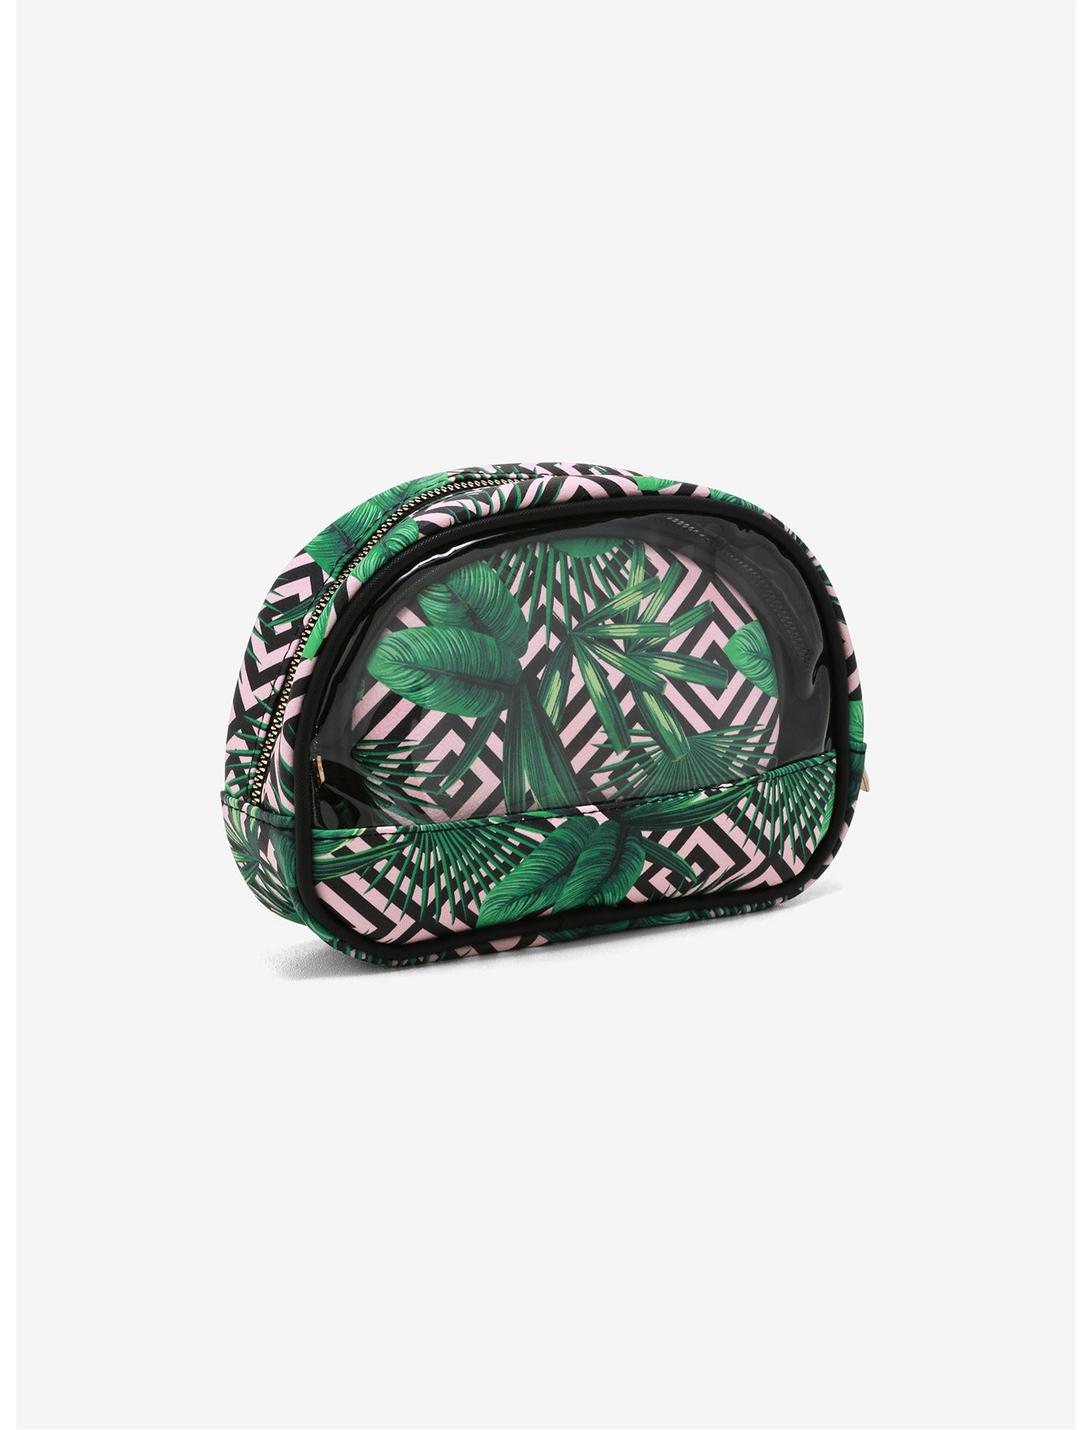 Cosmopolitan Palm Leaves Makeup Bag Set, , hi-res